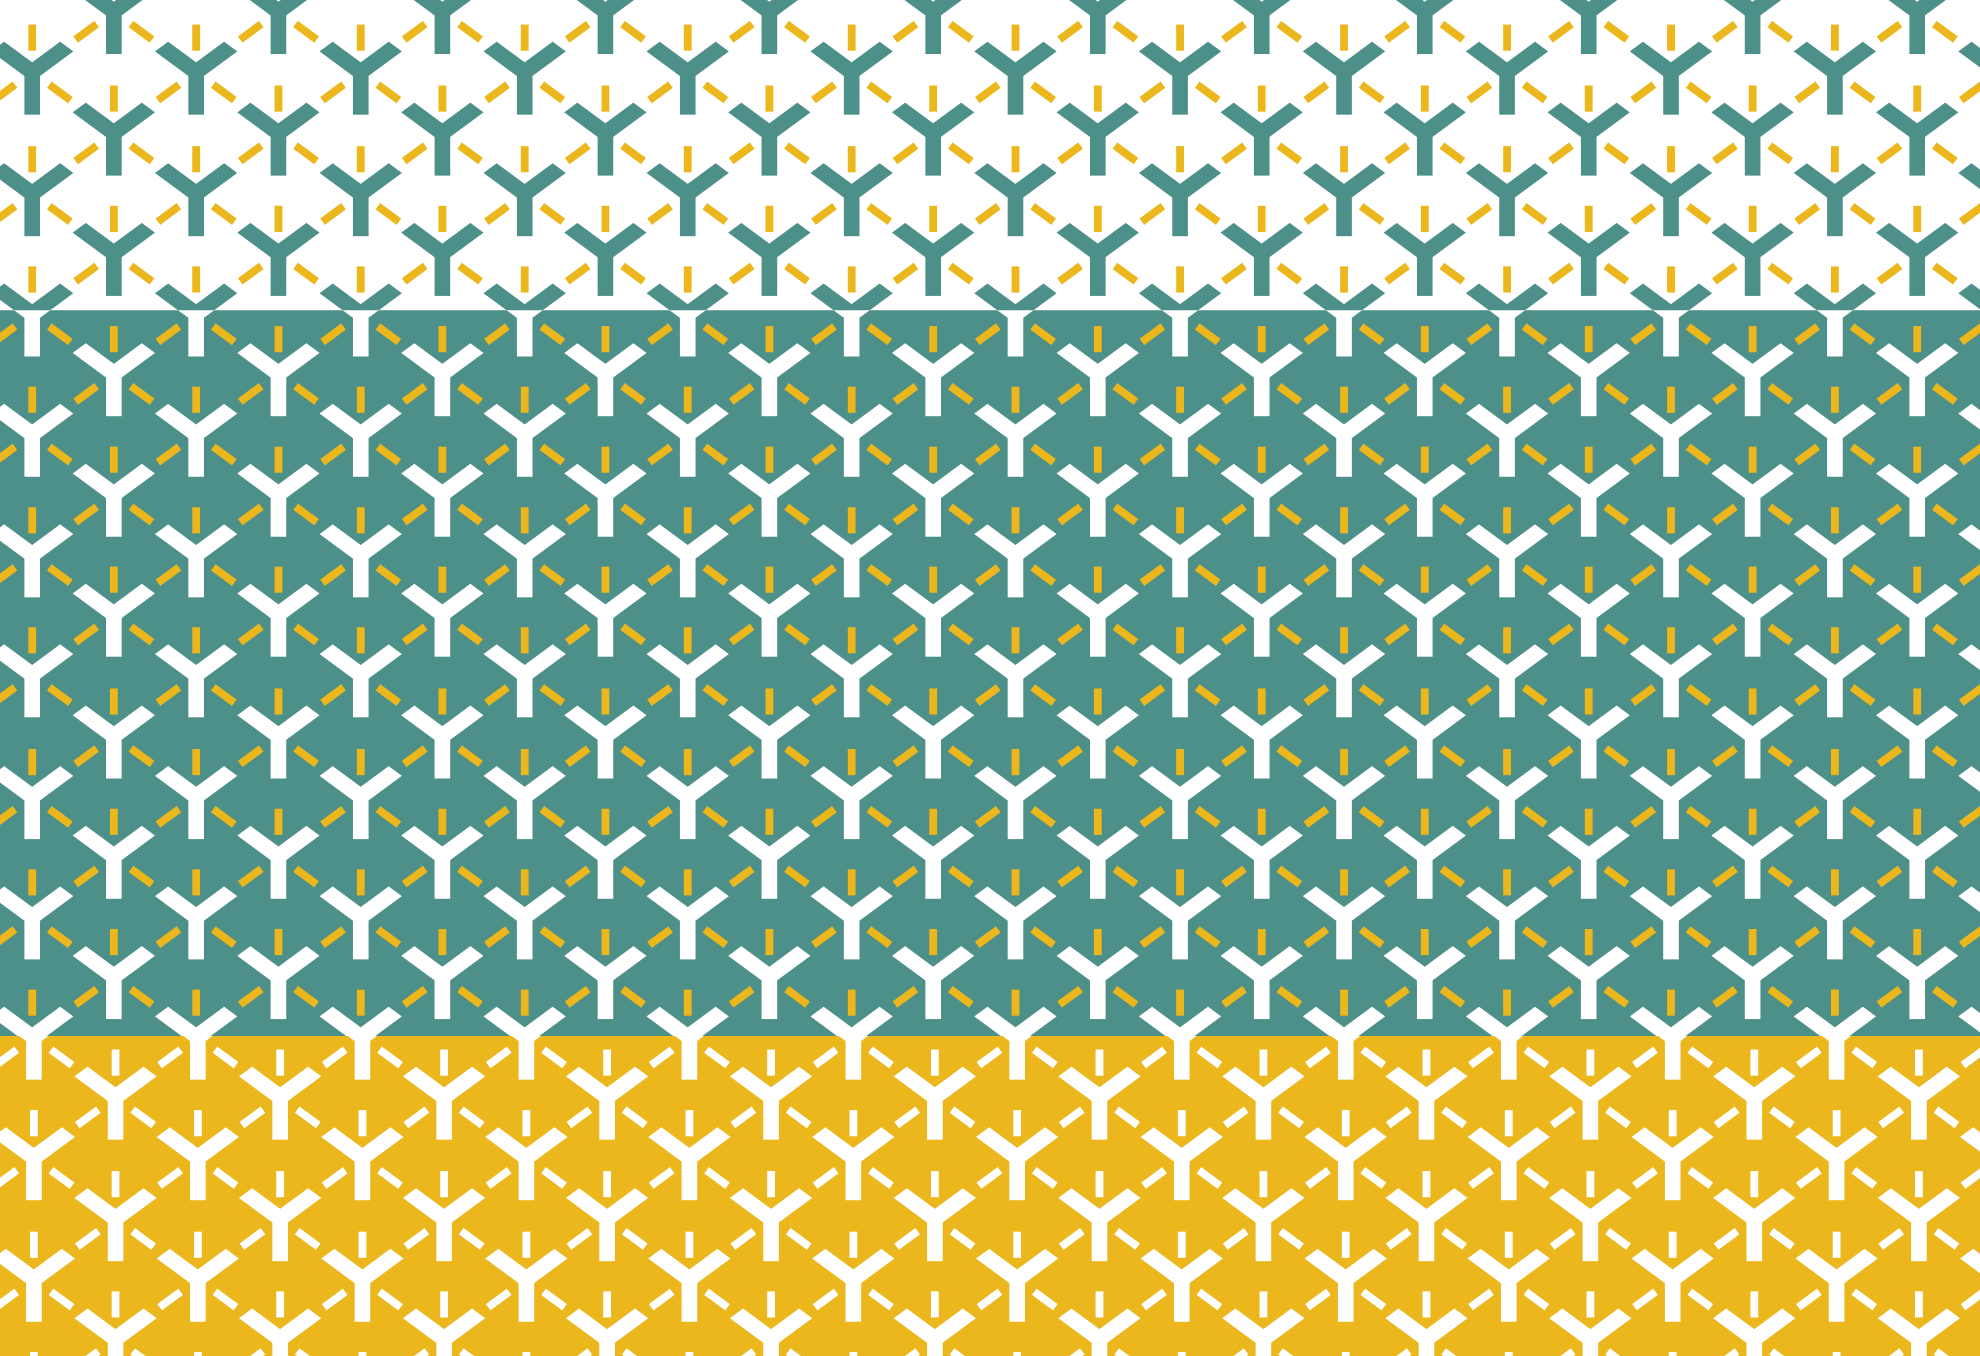 EGNYTE Pattern Design